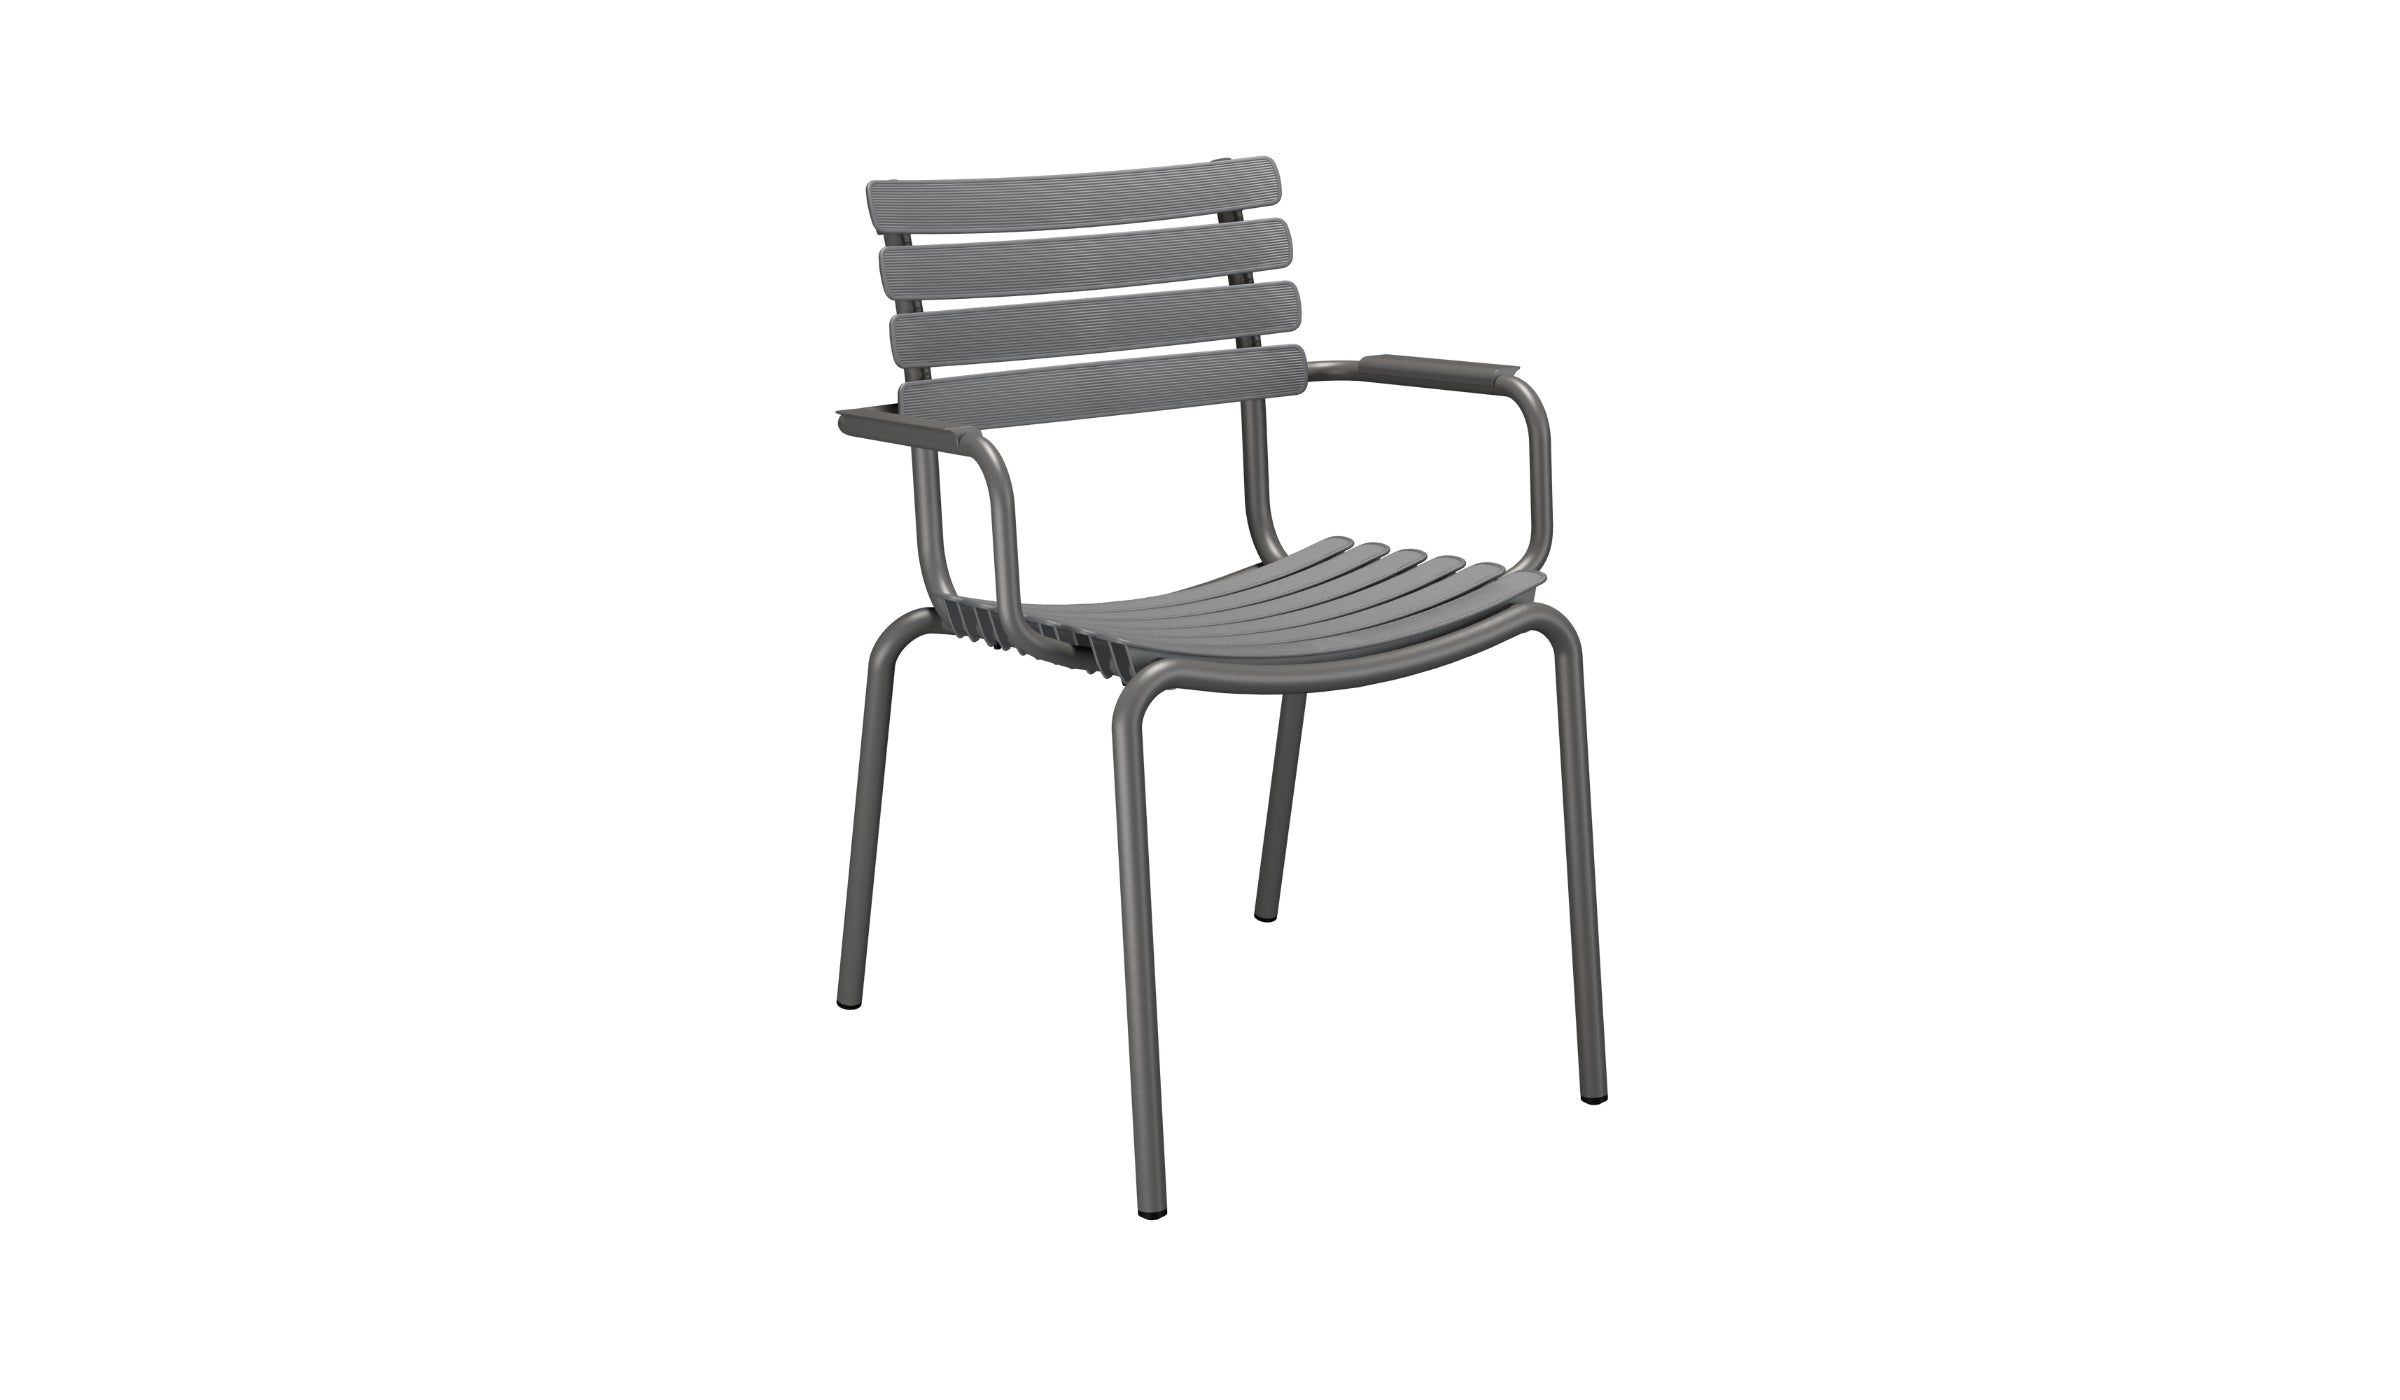 Reclips - Chaise d'extérieur en aluminium et plastique recyclé avec accoudoirs, gris